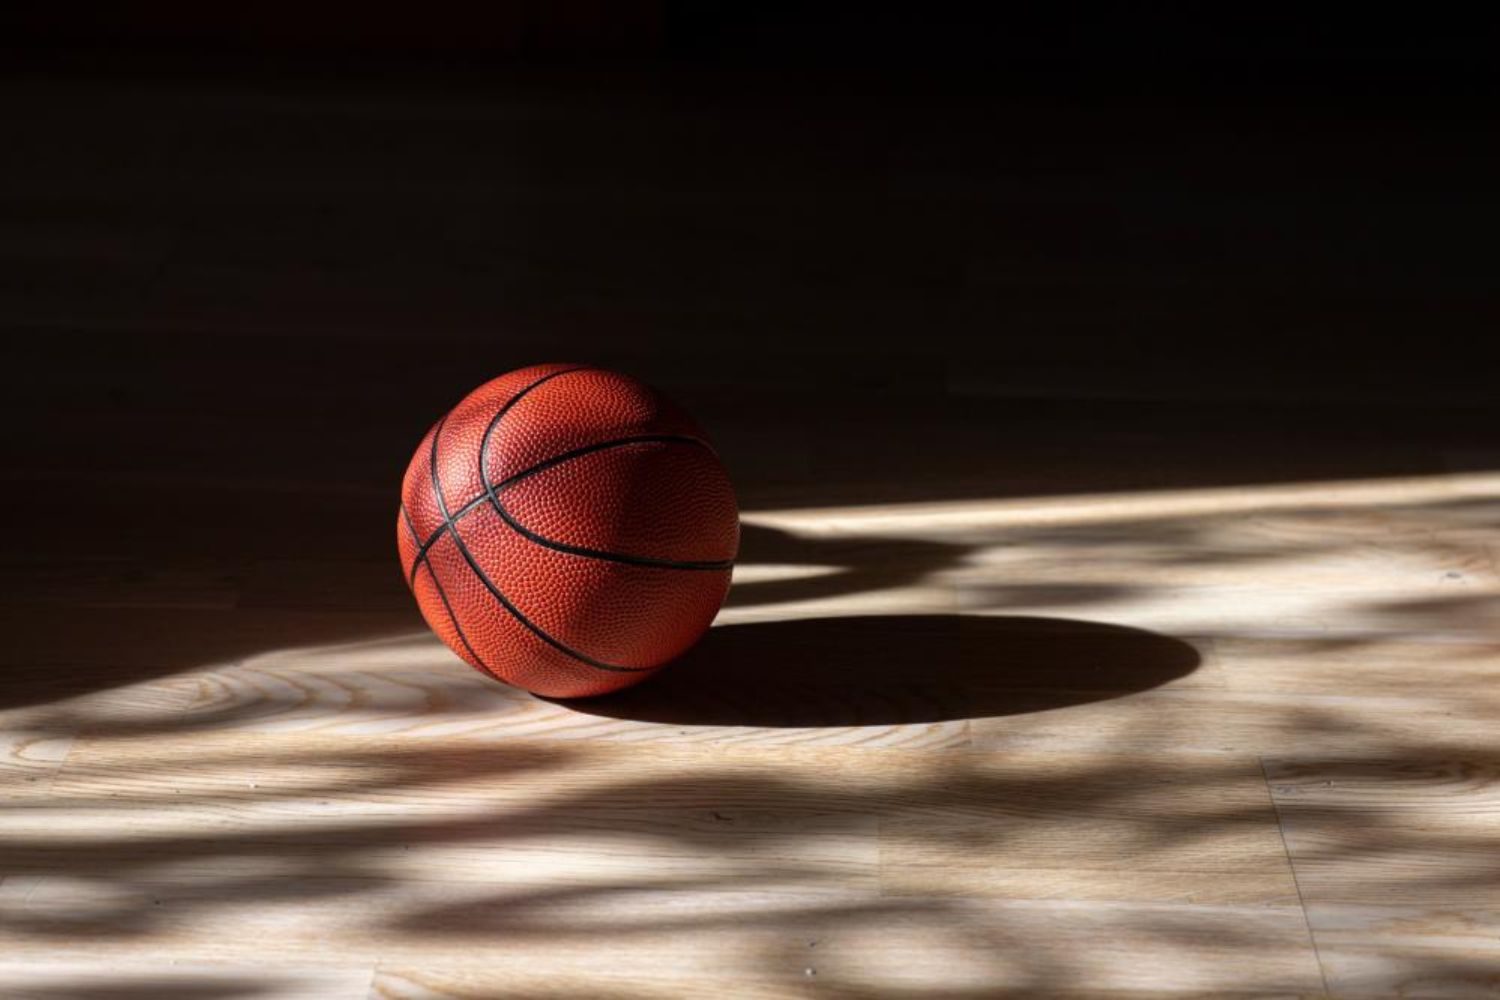 basketball on floor photo by sportoakimirka on shutterstock